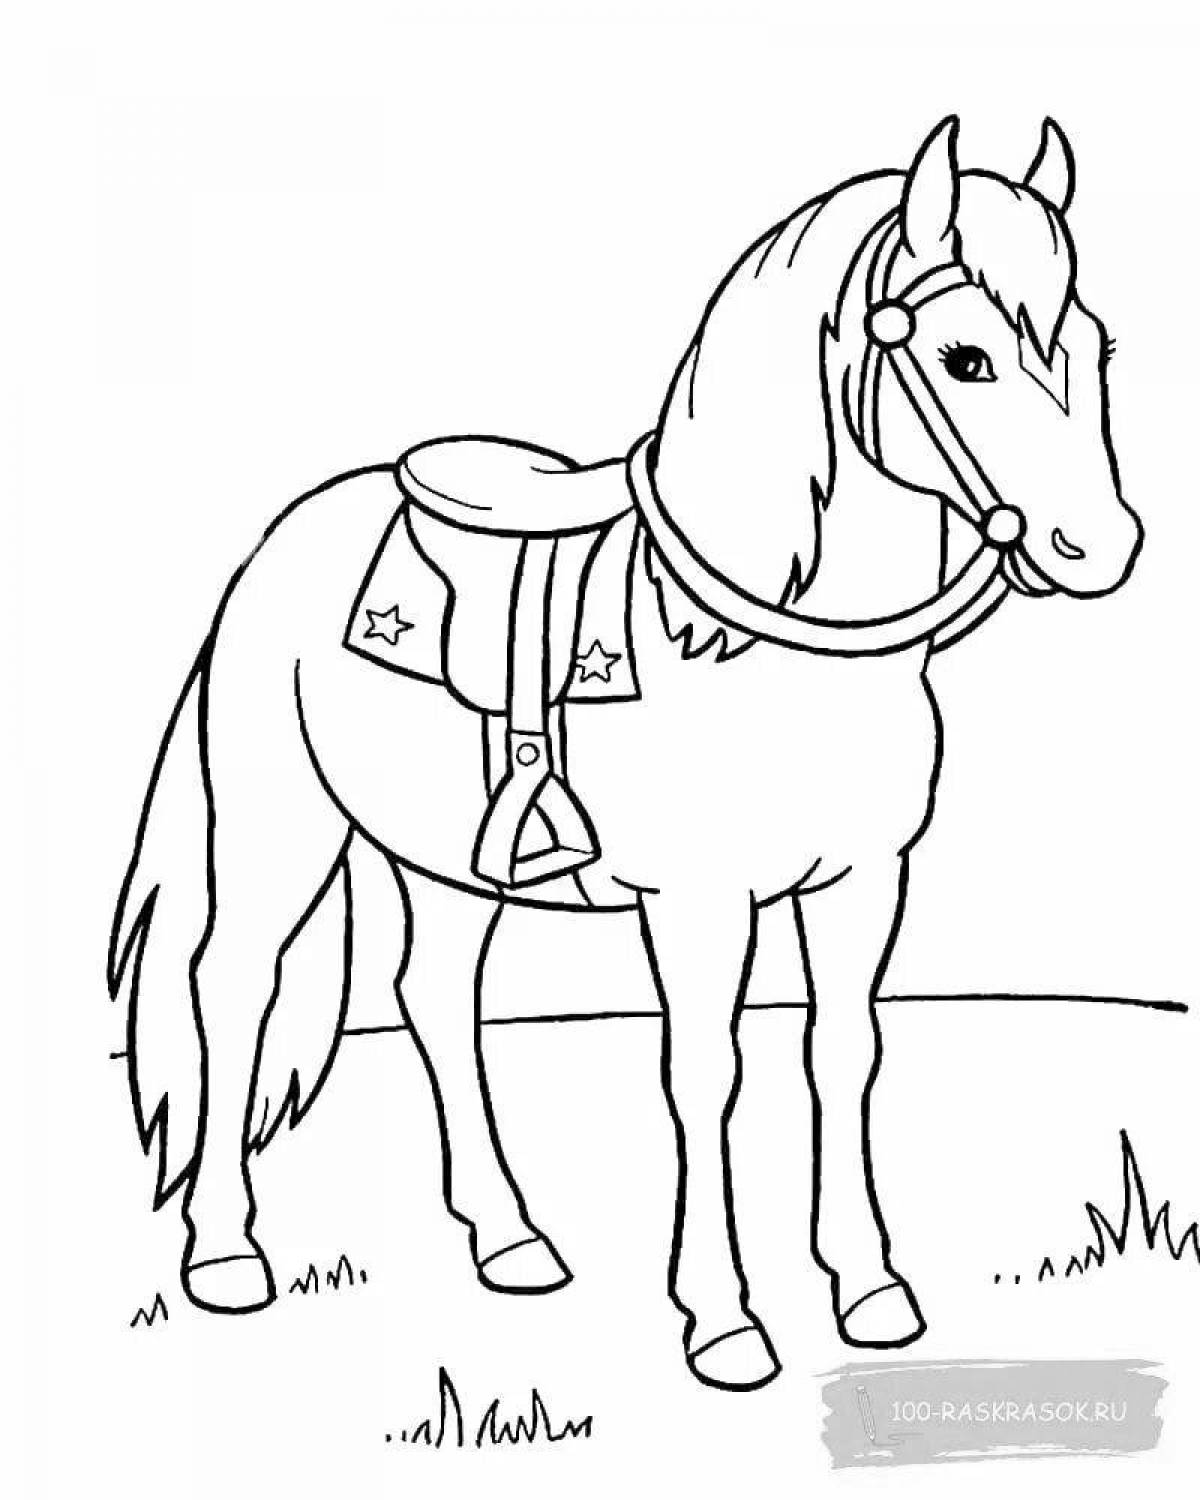 Экзотическая раскраска лошадь для детей 6-7 лет